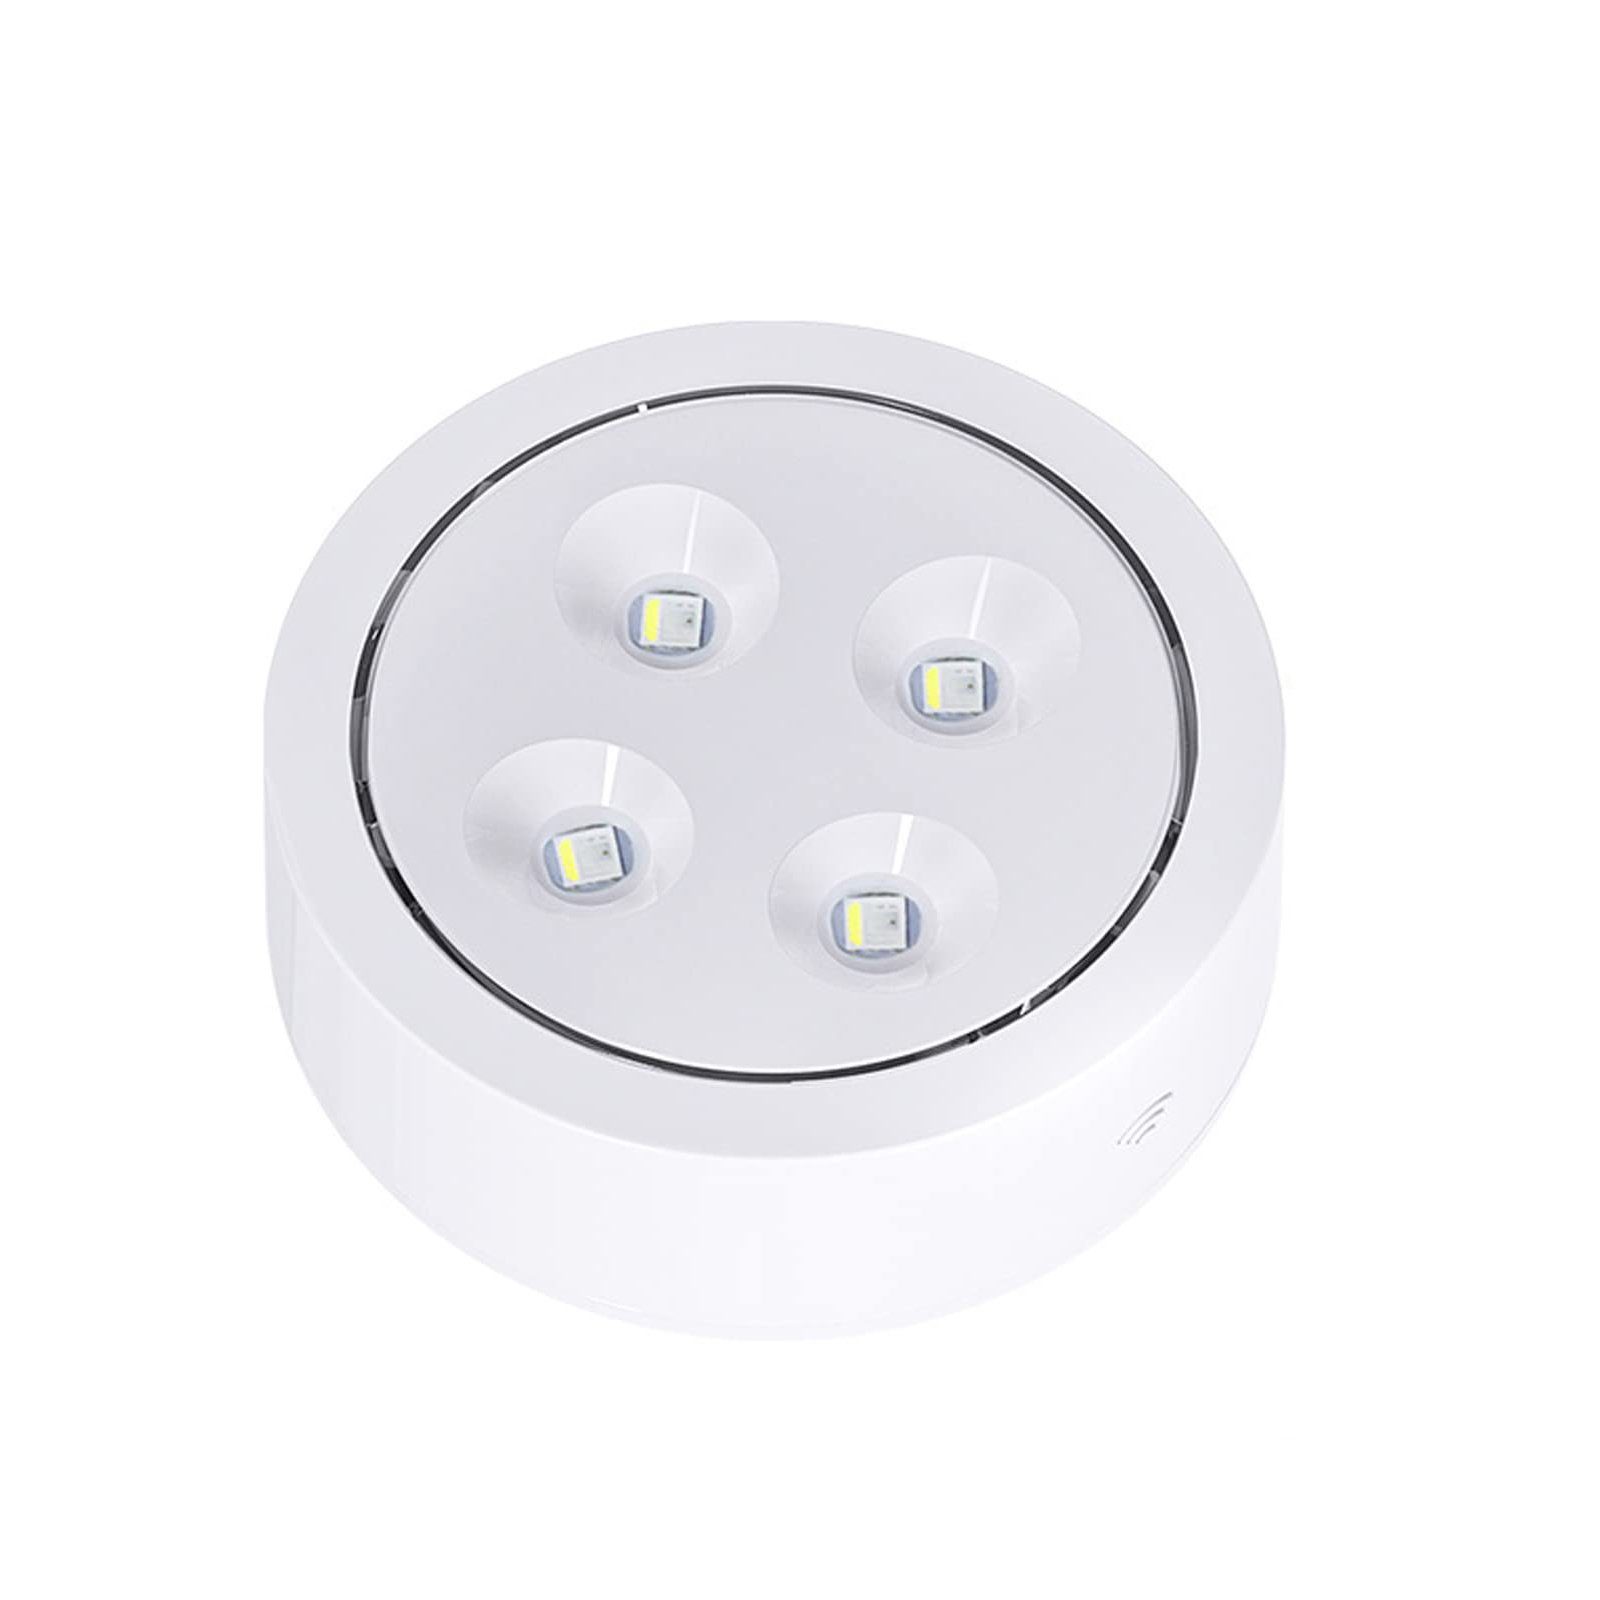 Sunicol LED Unterbauleuchte RGB Spot, Batterielampe, Schrank Weiß Küche Touch Farben, Dimmbar Fernsteuerung, Sensor Vitrinenbeleuchtung Nachtlicht Glasboden mit 13